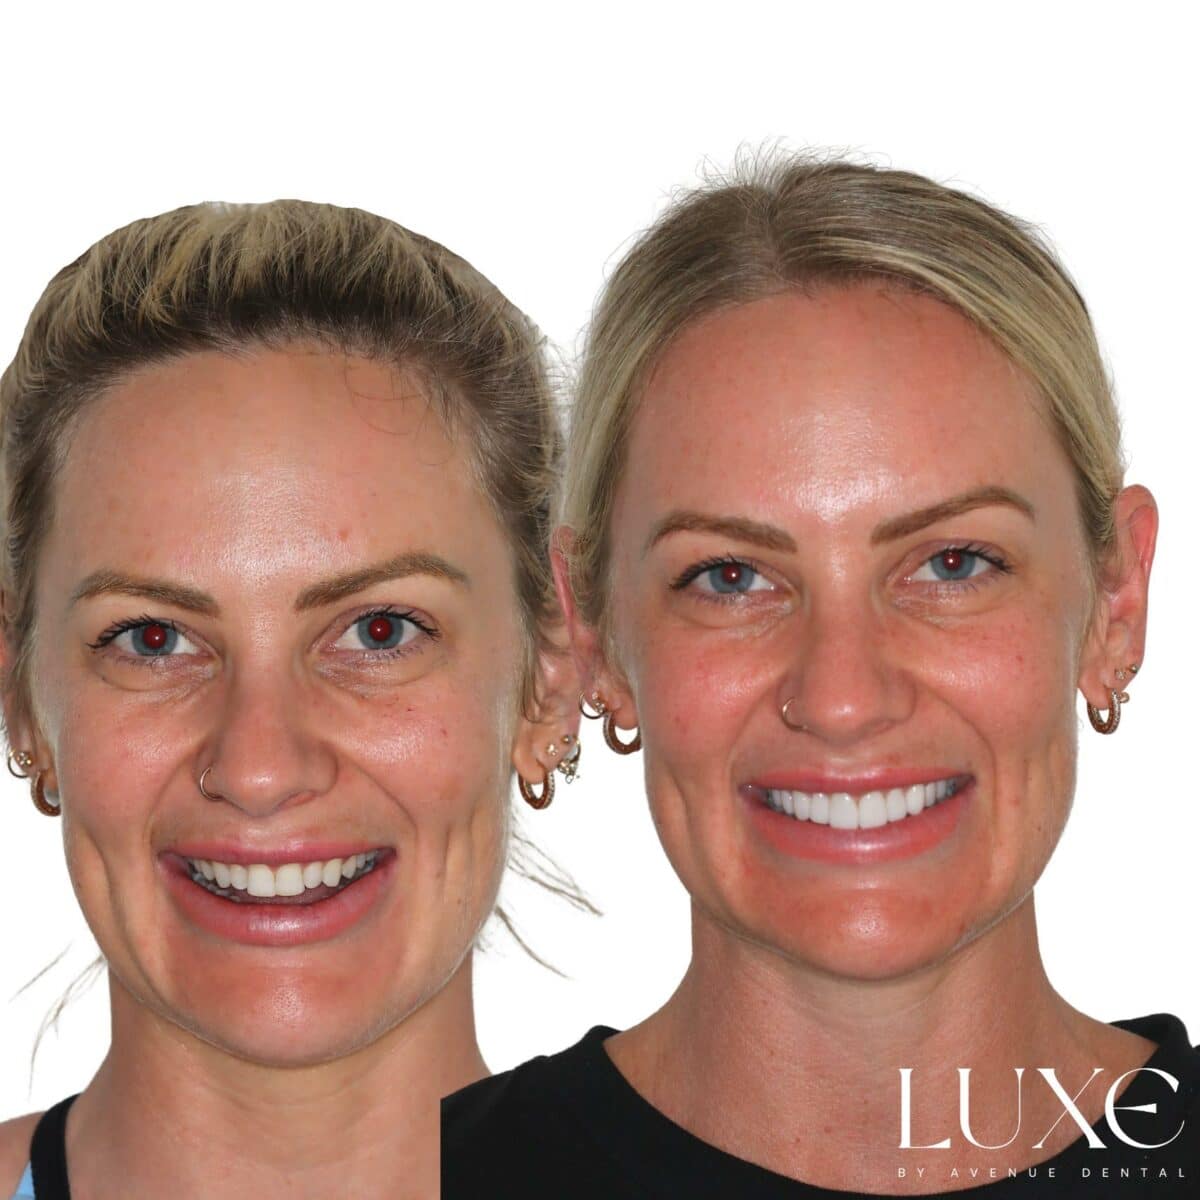 Luxe Dental Veneers Results (1)